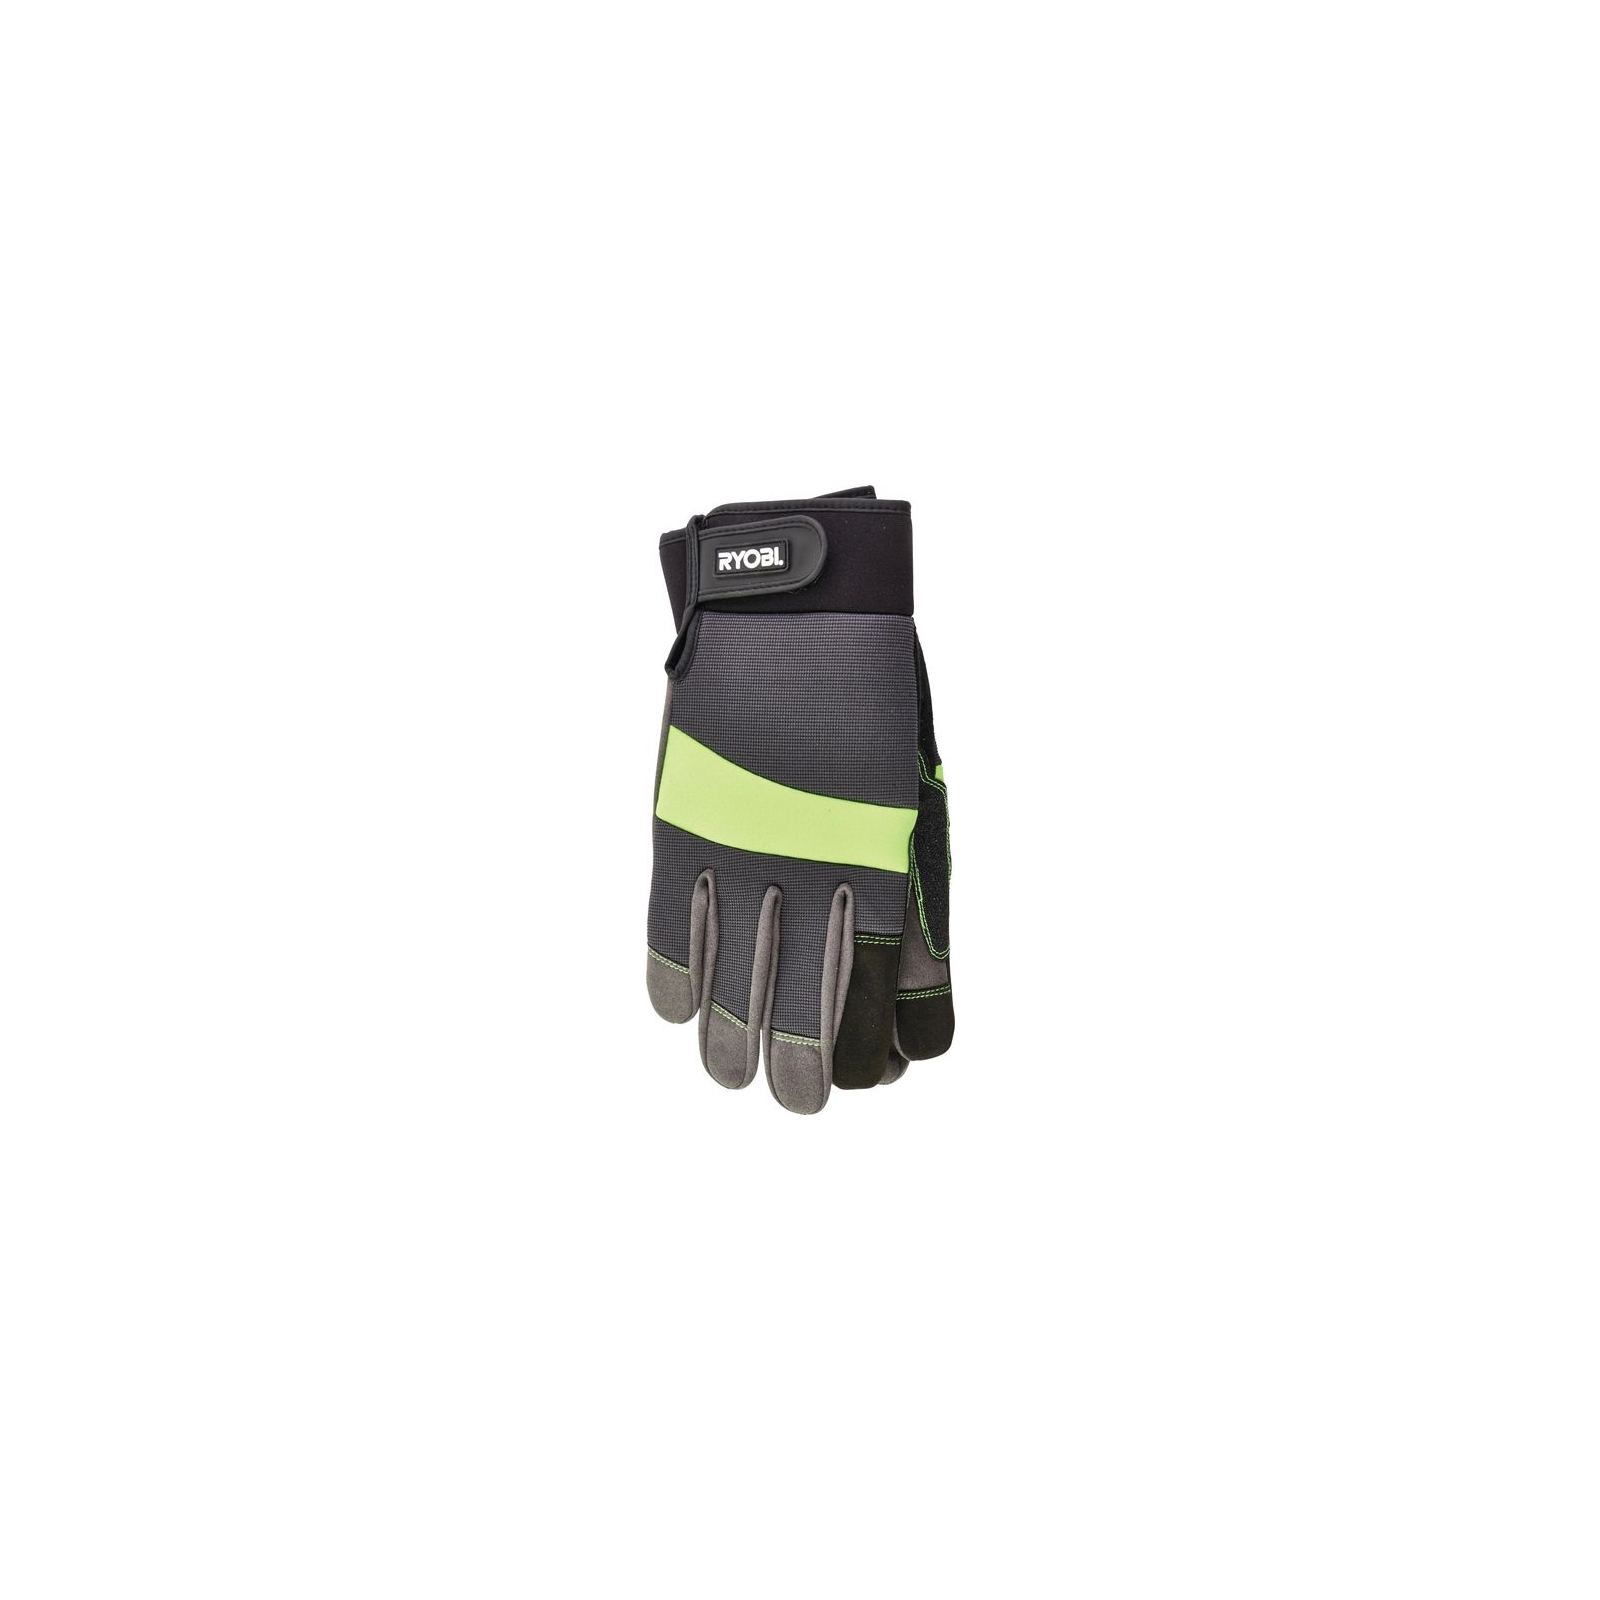 Защитные перчатки Ryobi RAC811XL, влагозащита, р. XL (5132003439) изображение 2